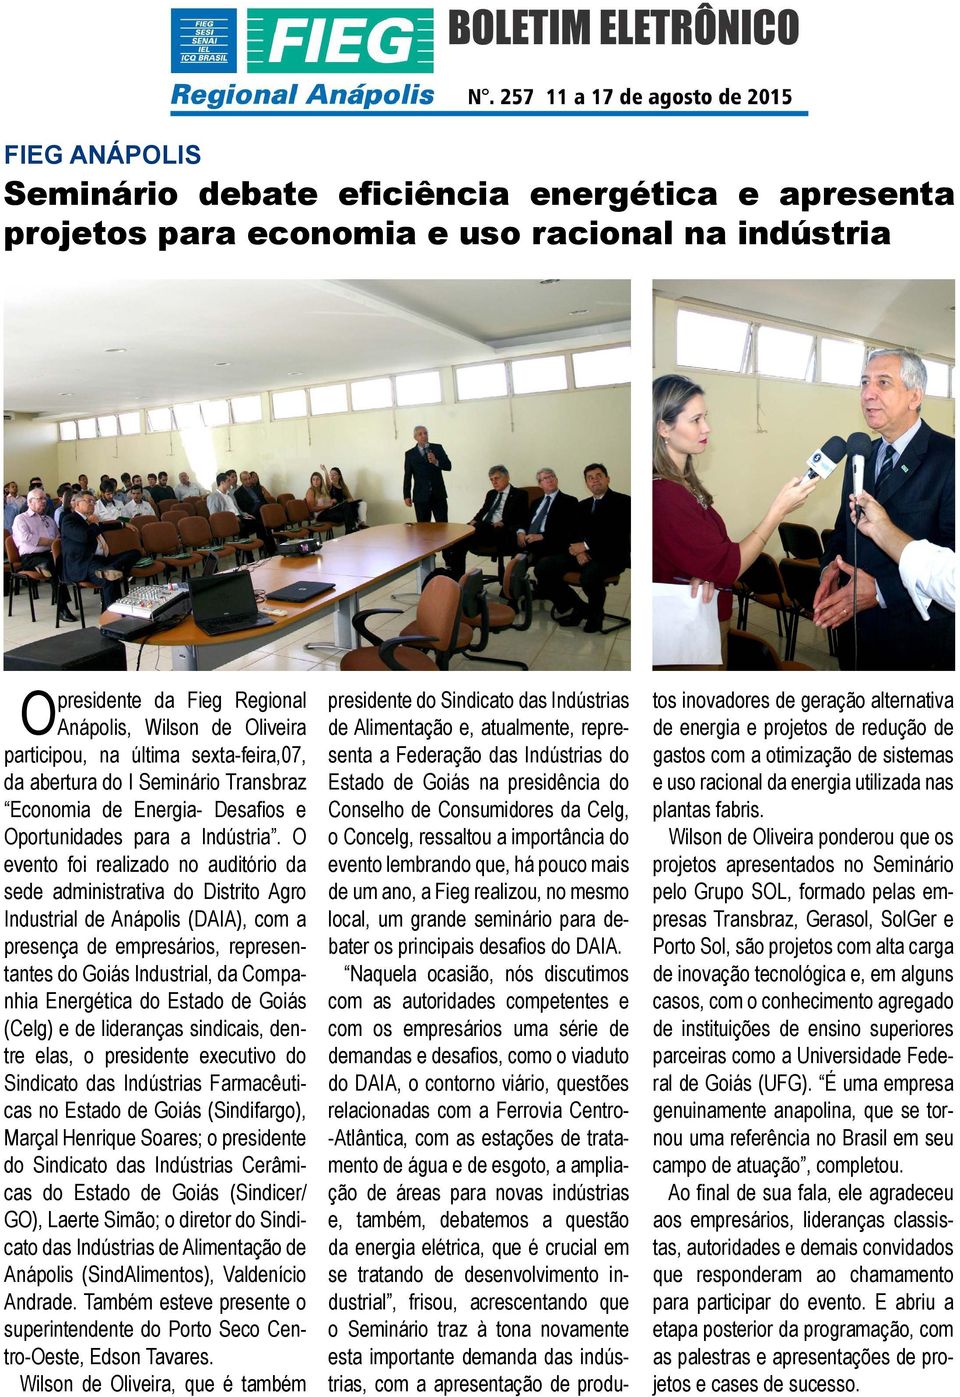 O evento foi realizado no auditório da sede administrativa do Distrito Agro Industrial de Anápolis (DAIA), com a presença de empresários, representantes do Goiás Industrial, da Companhia Energética